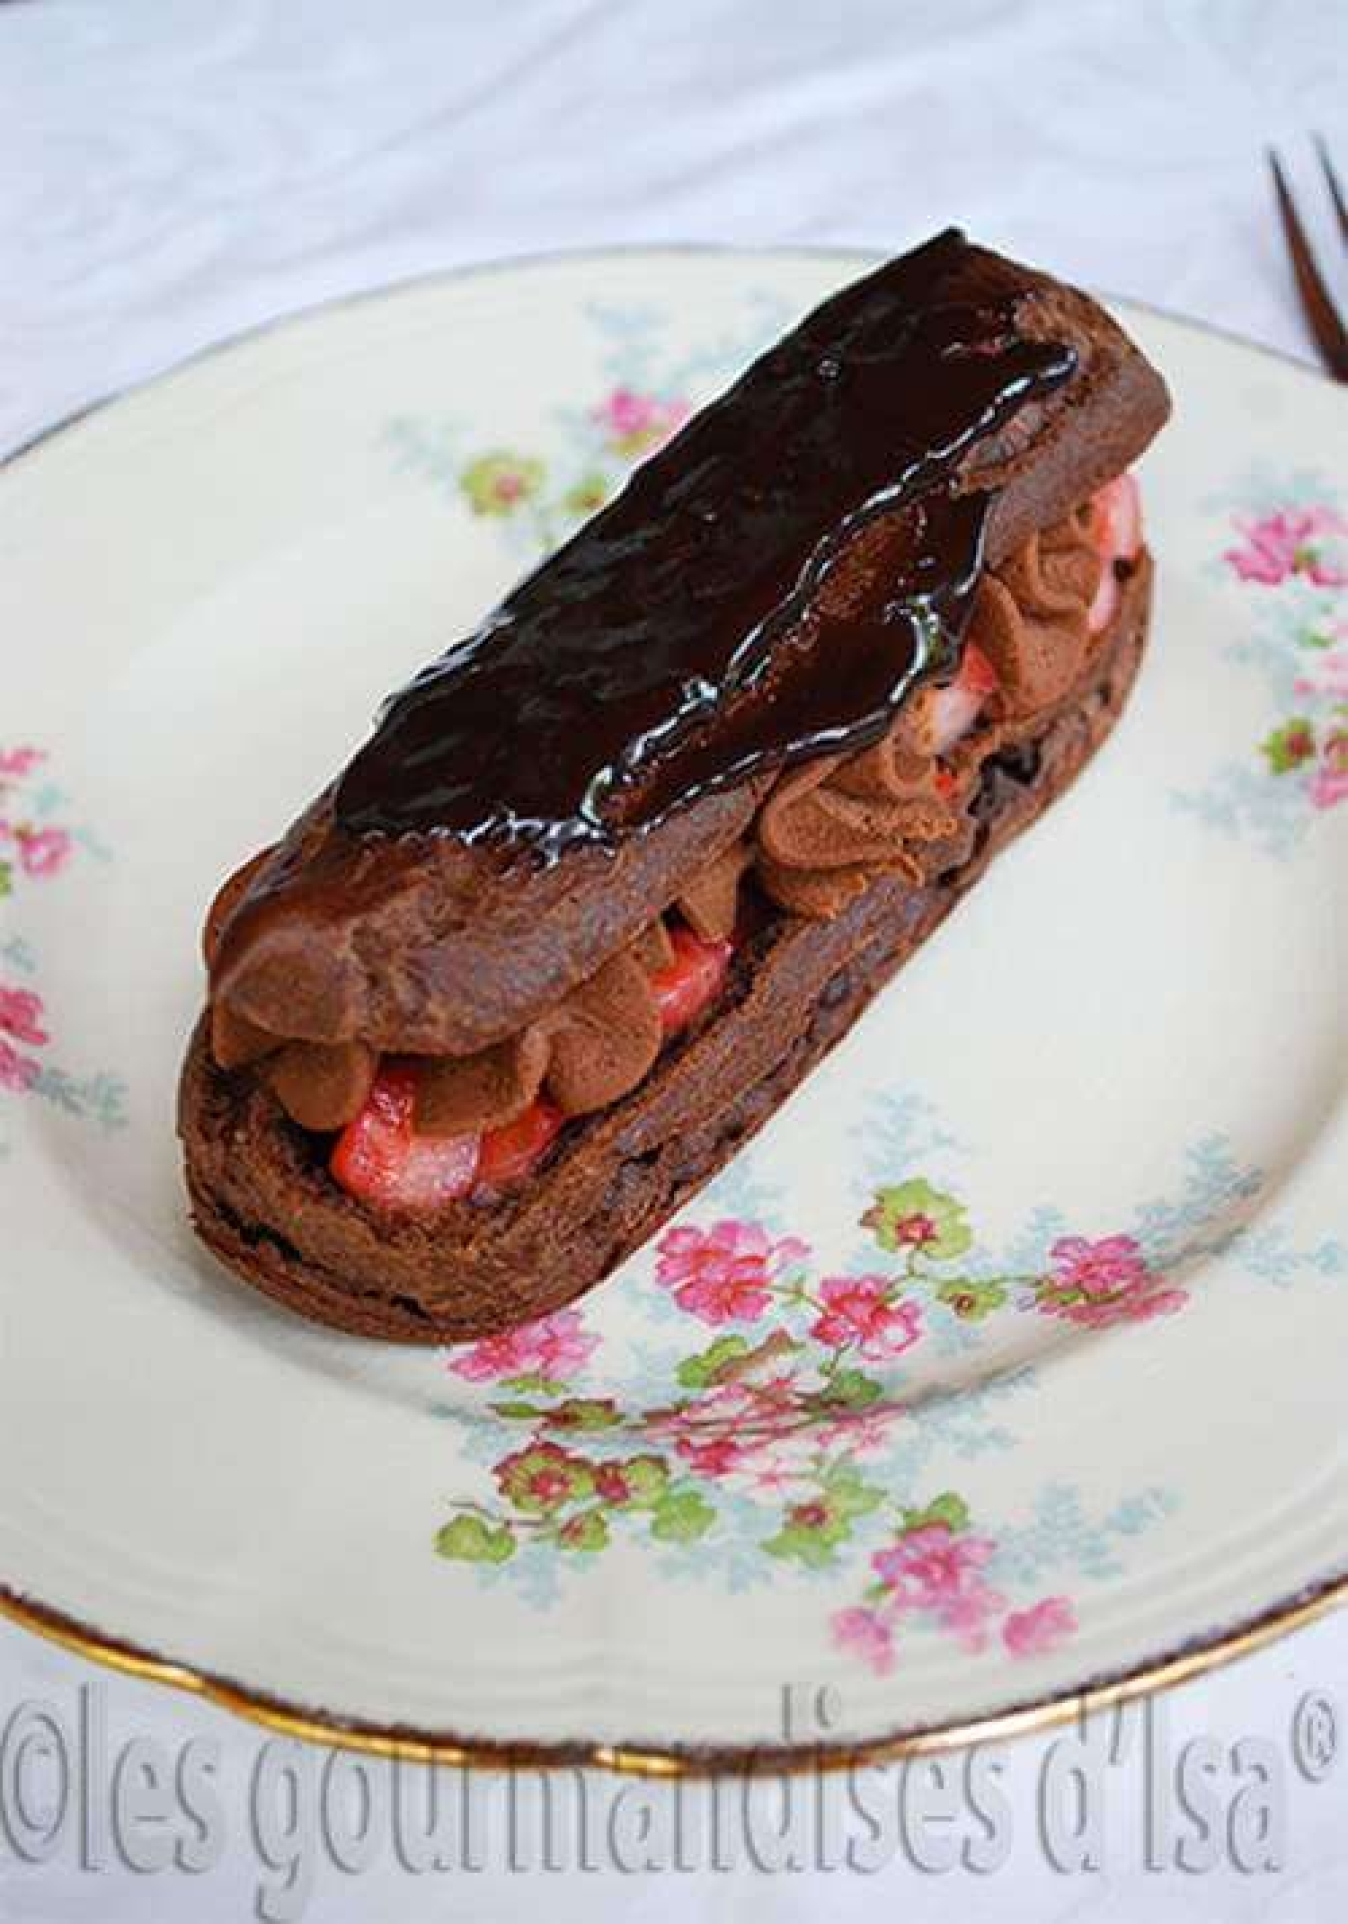 La recette de Les gourmandises d'isa : éclairs au cacao, tartare de fraises à la menthe et ganache montée au chocolat au lait praliné